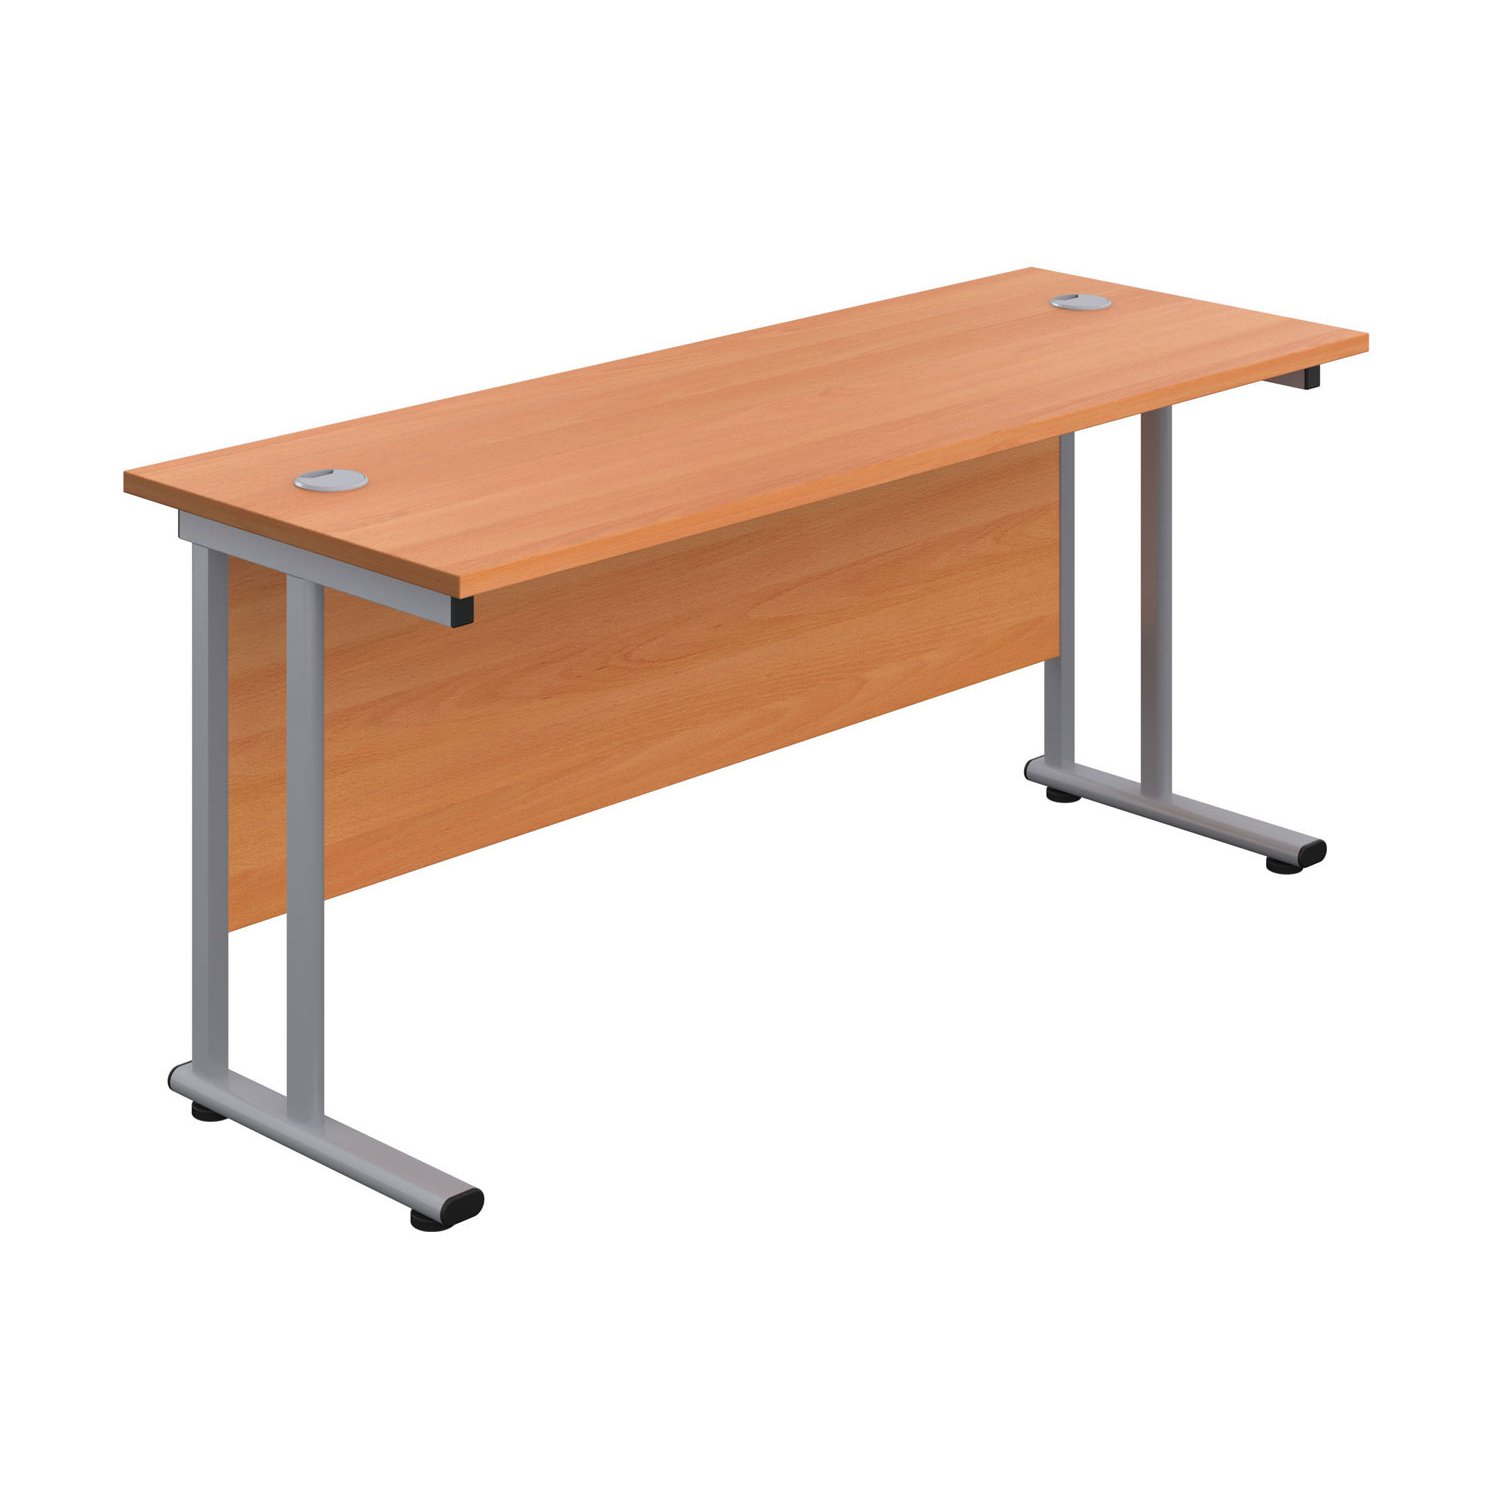 Proteus II Rectangular Desk, 120wx80dx73h (cm), Silver/Beech